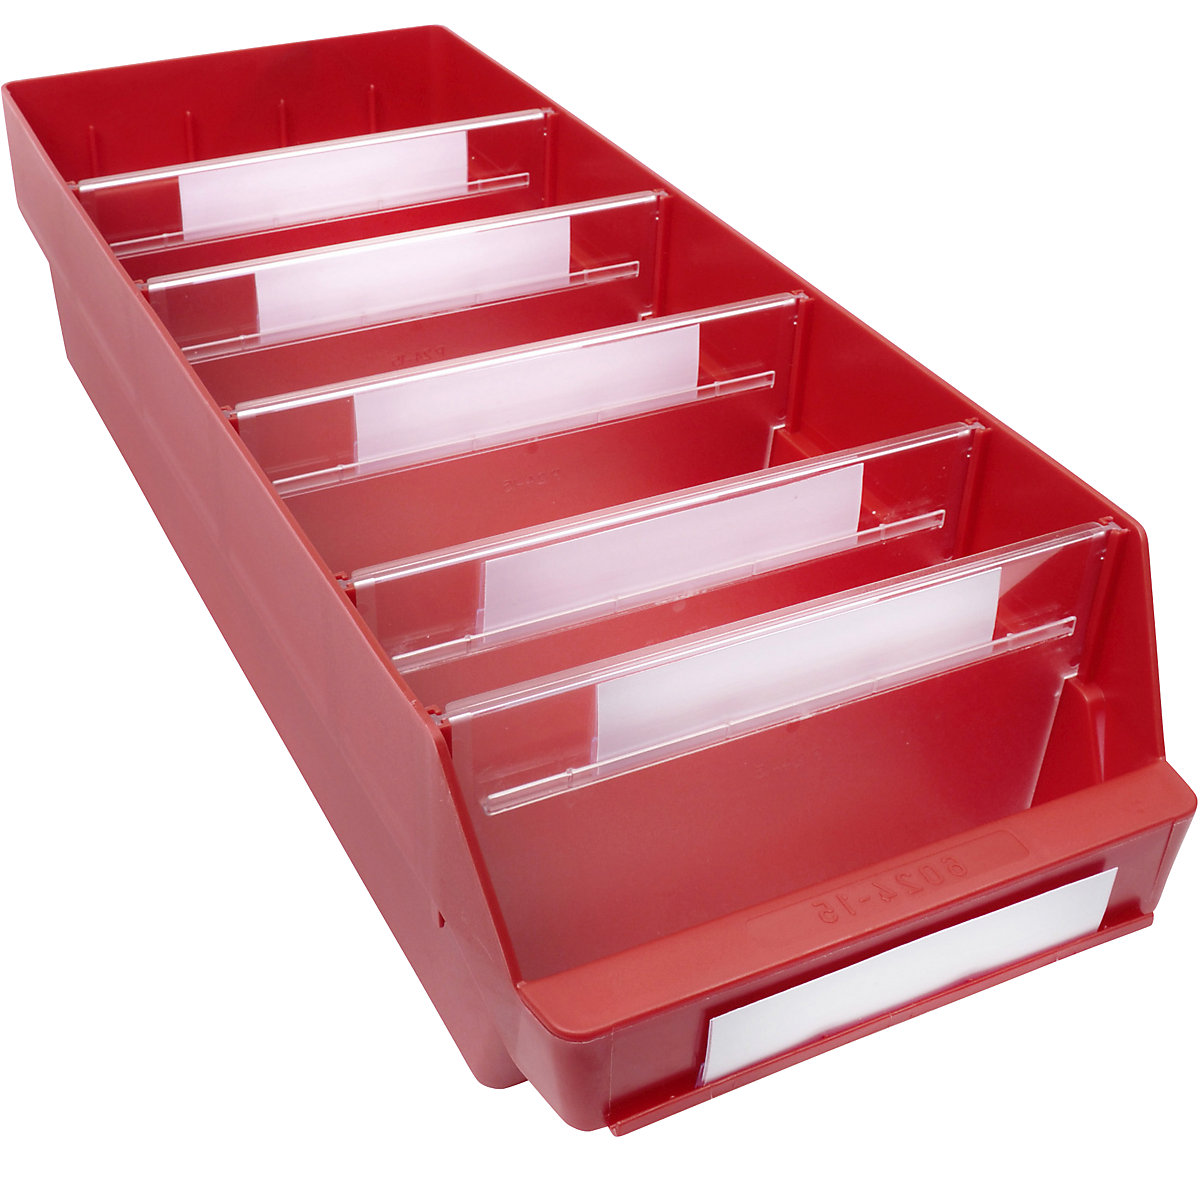 Bac de stockage en polypropylène résistant aux chocs – STEMO, coloris rouge, L x l x h 600 x 240 x 150 mm, lot de 10-11